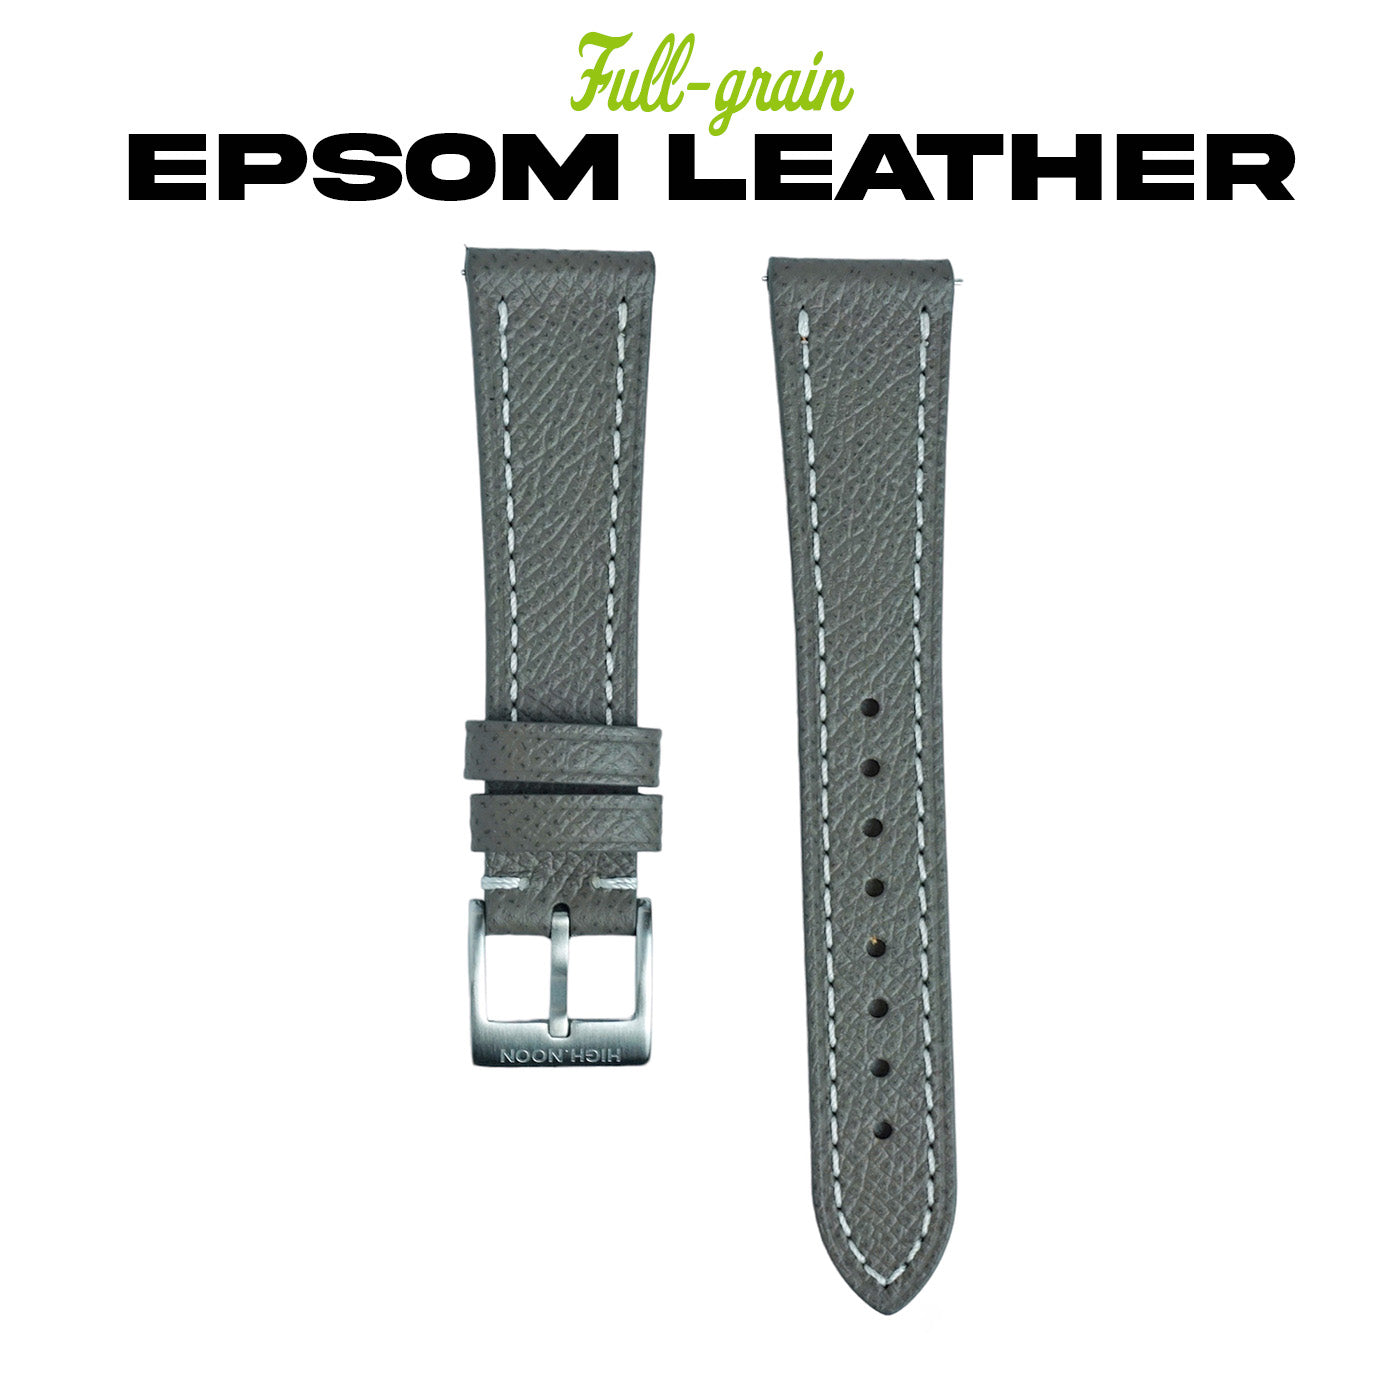 Full Grained Epsom Leather Strap